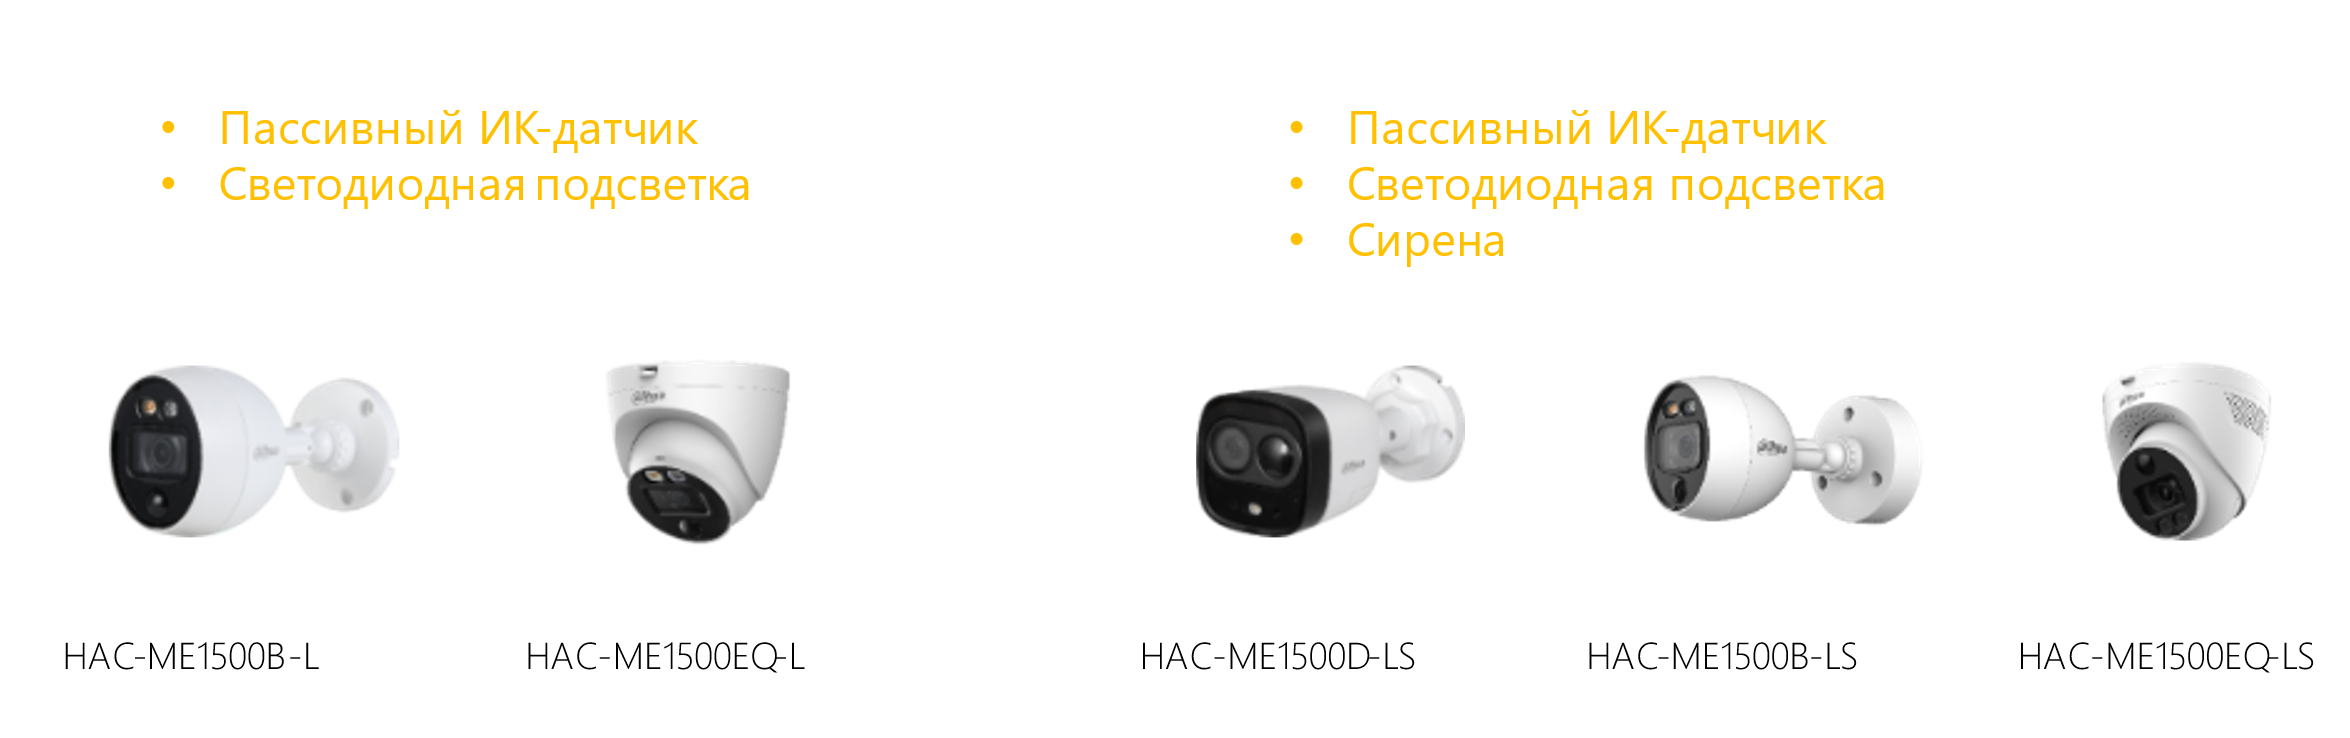 ME1500-S2 – новая серия HDCVI-видеокамер Dahua Active Deterrence 2.0